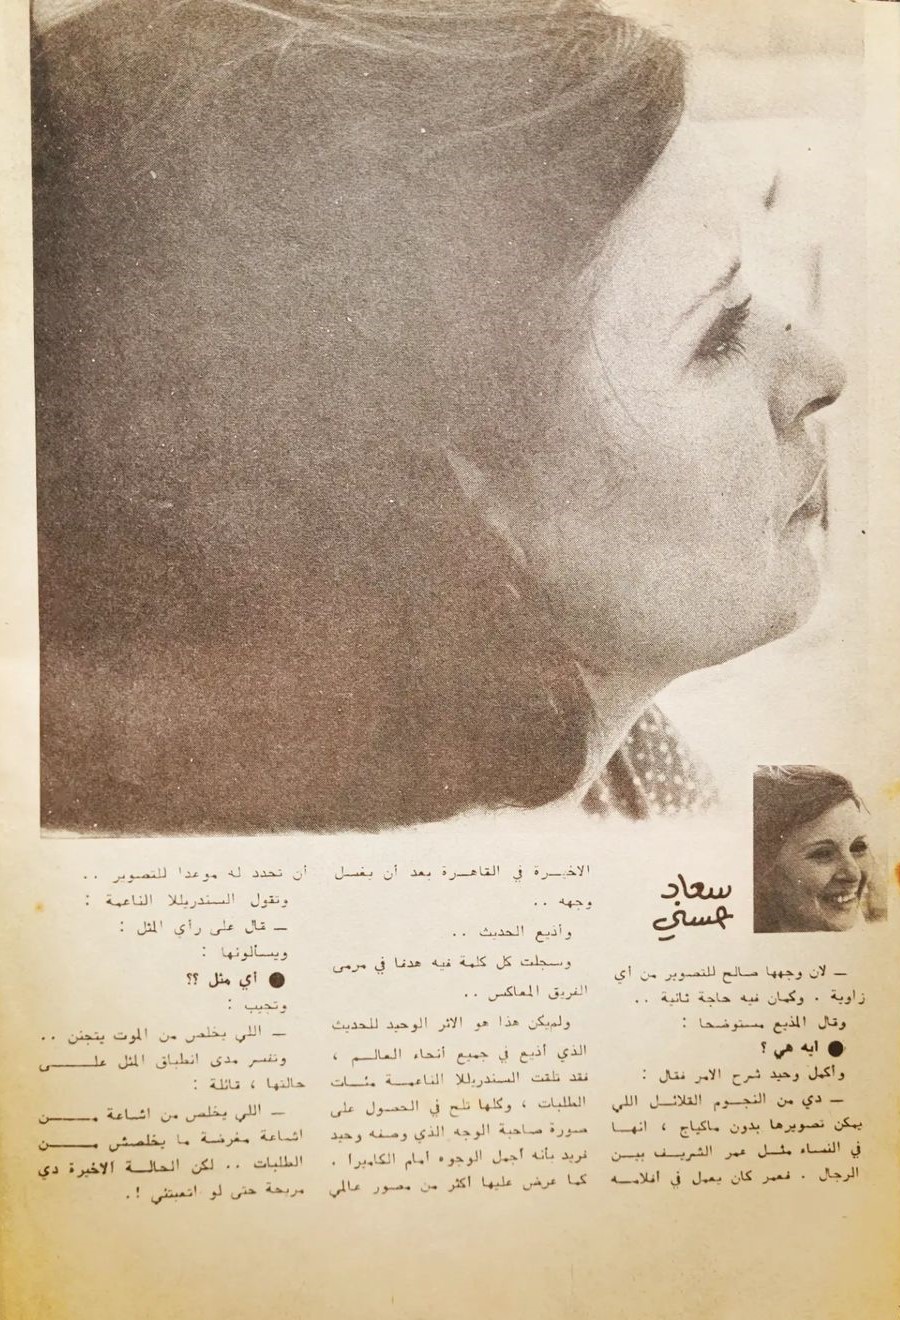 حسني - مقال صحفي : أي سر يبحث عنه المصورون .. في وجه سعاد حسني 1976 م 447